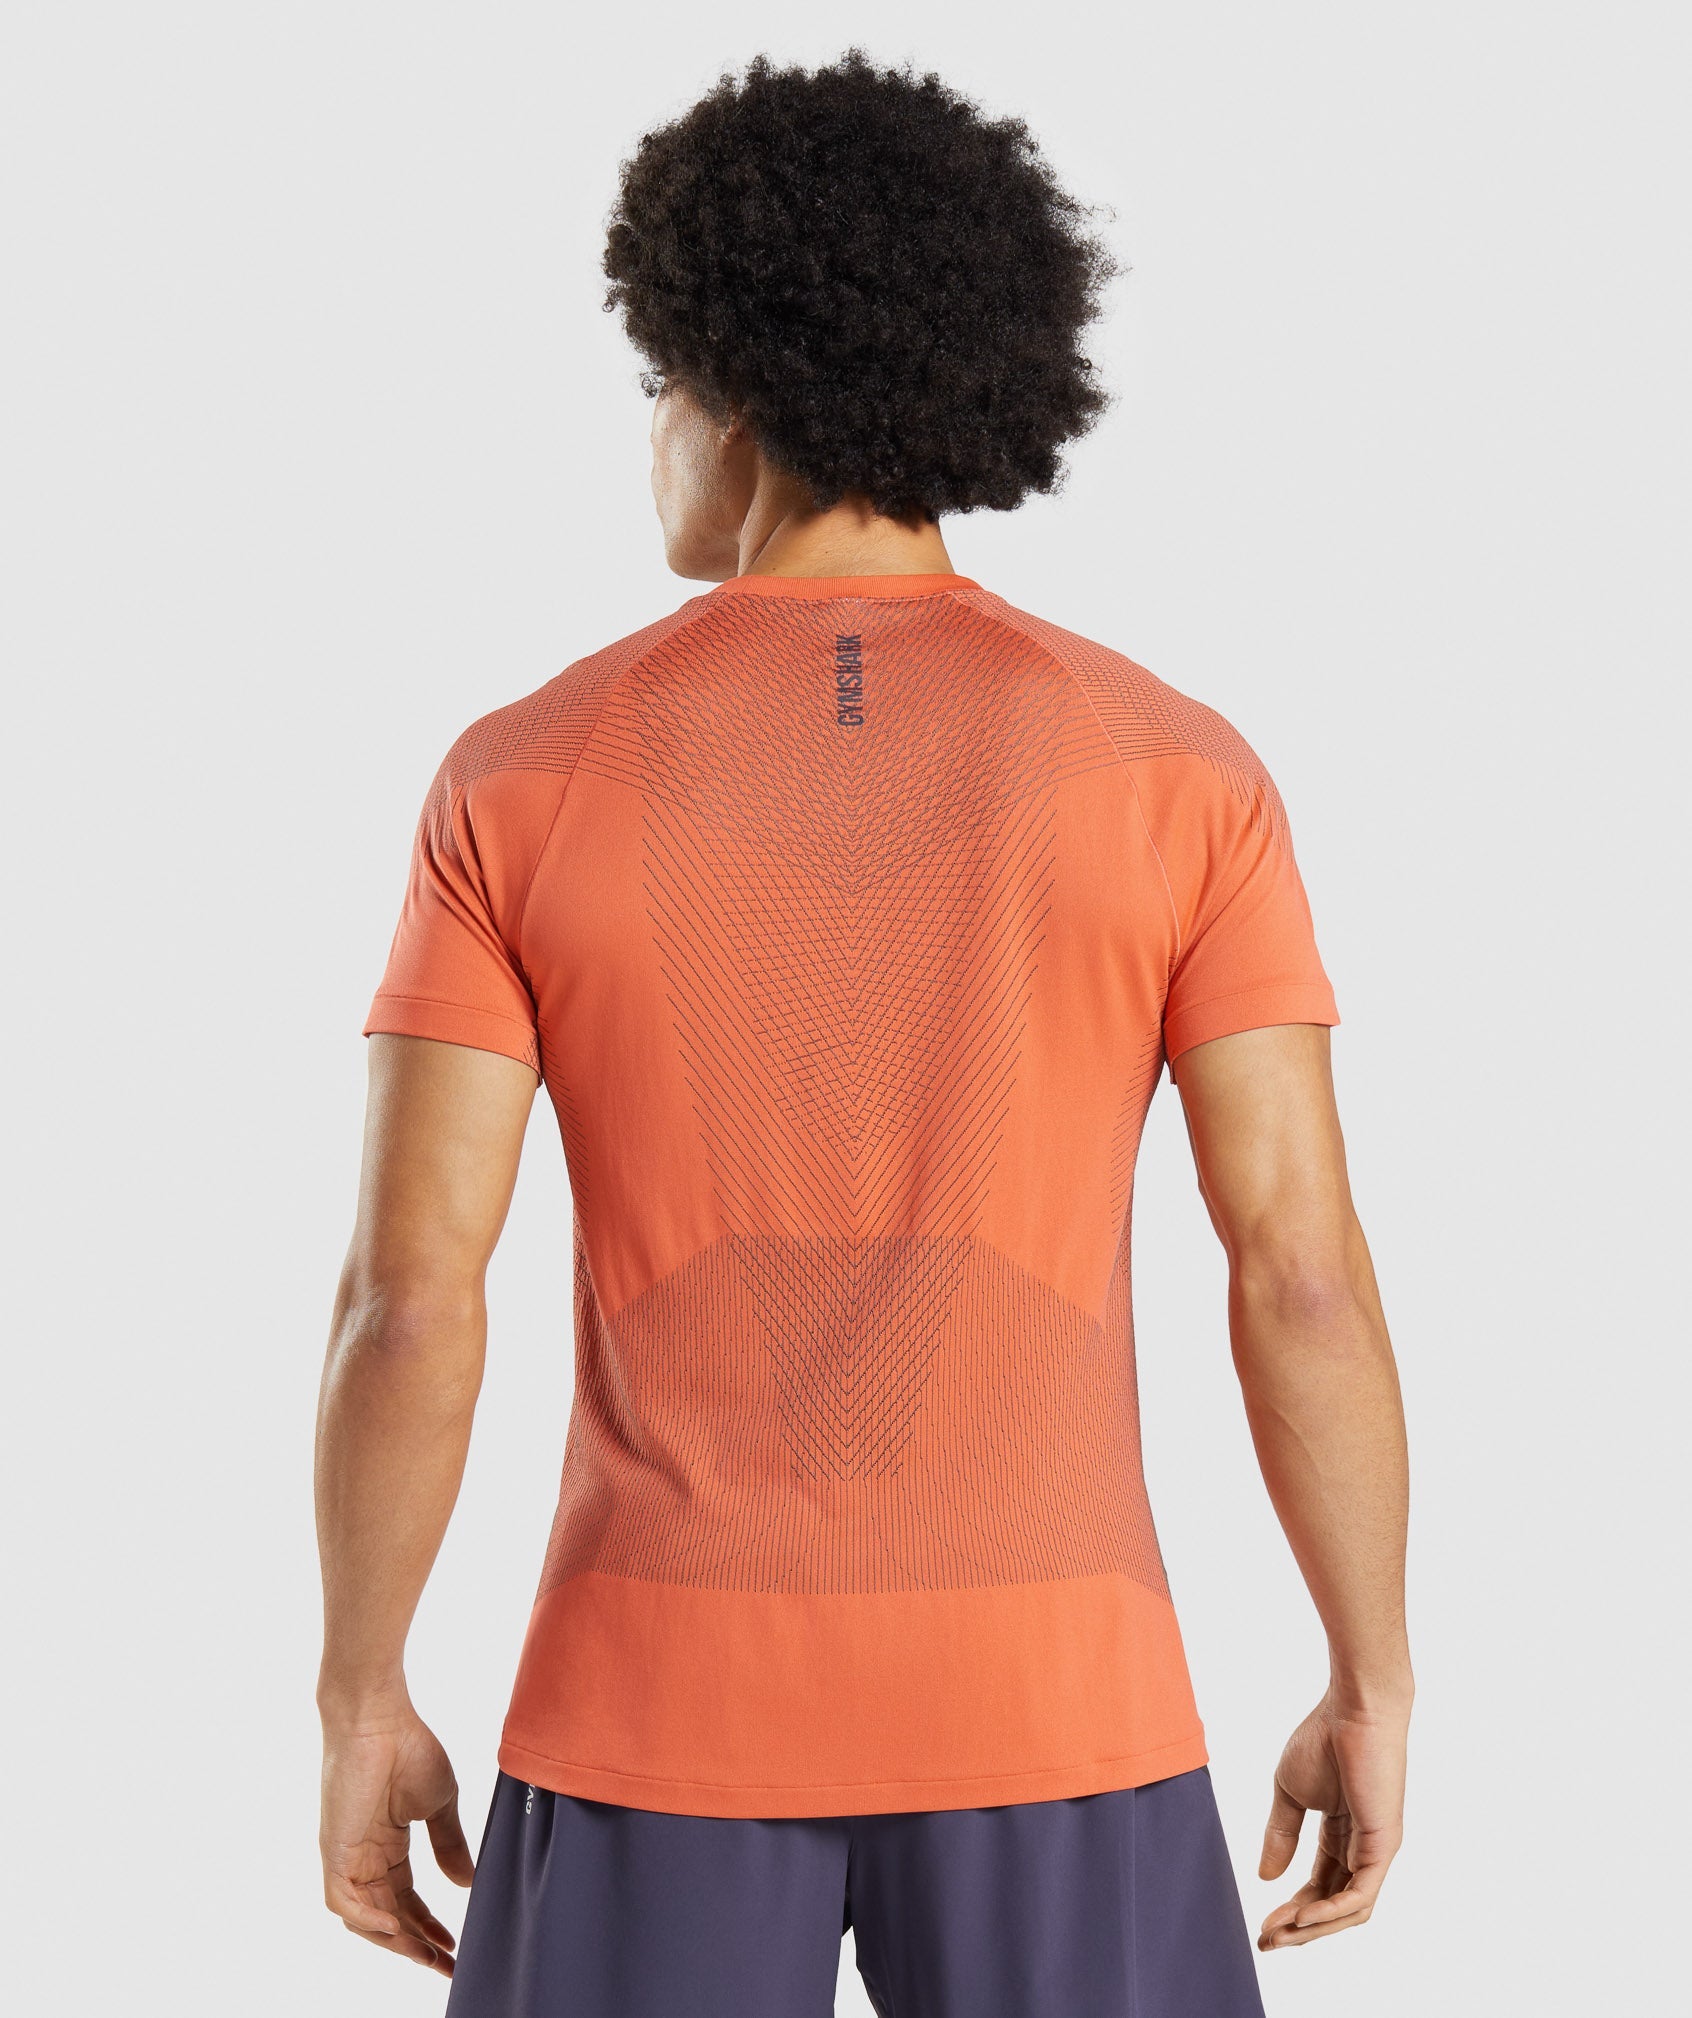 Apex Seamless T-Shirt in Papaya Orange/Onyx Grey